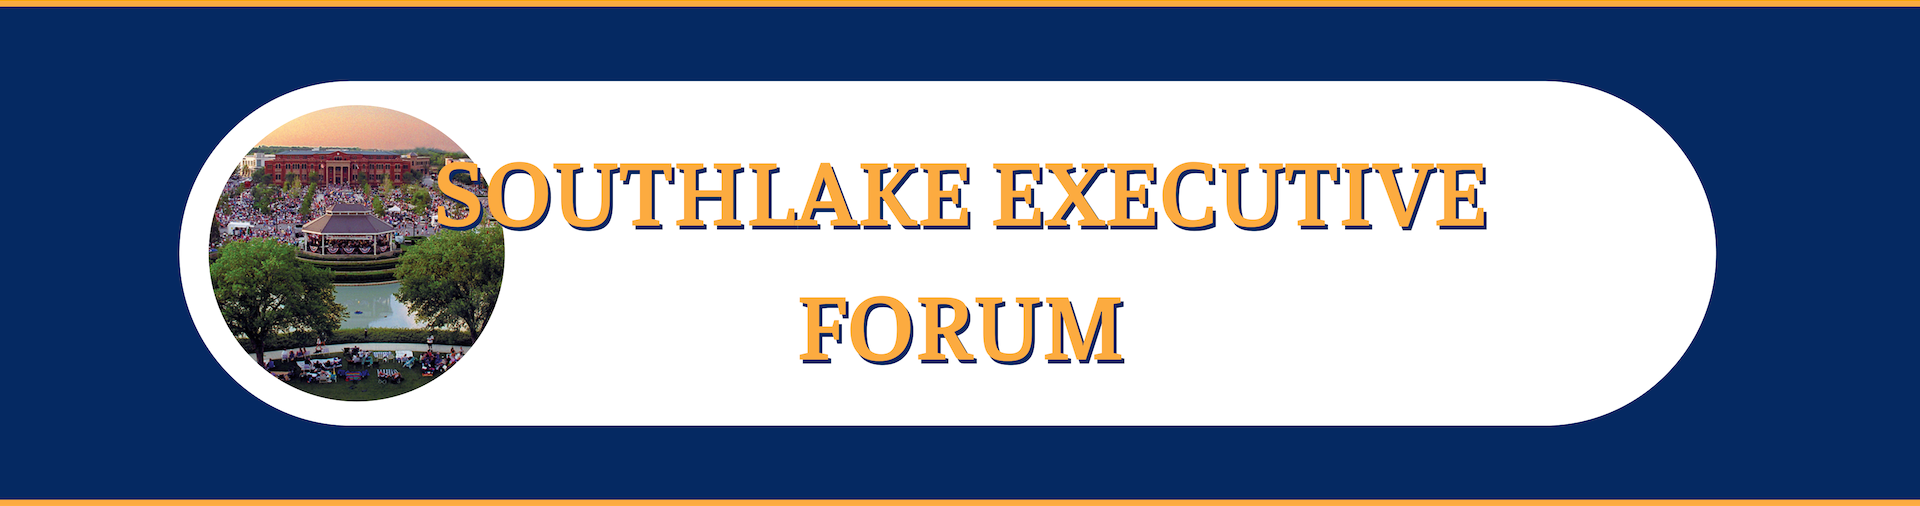 Southlake Executive Forum Header Image